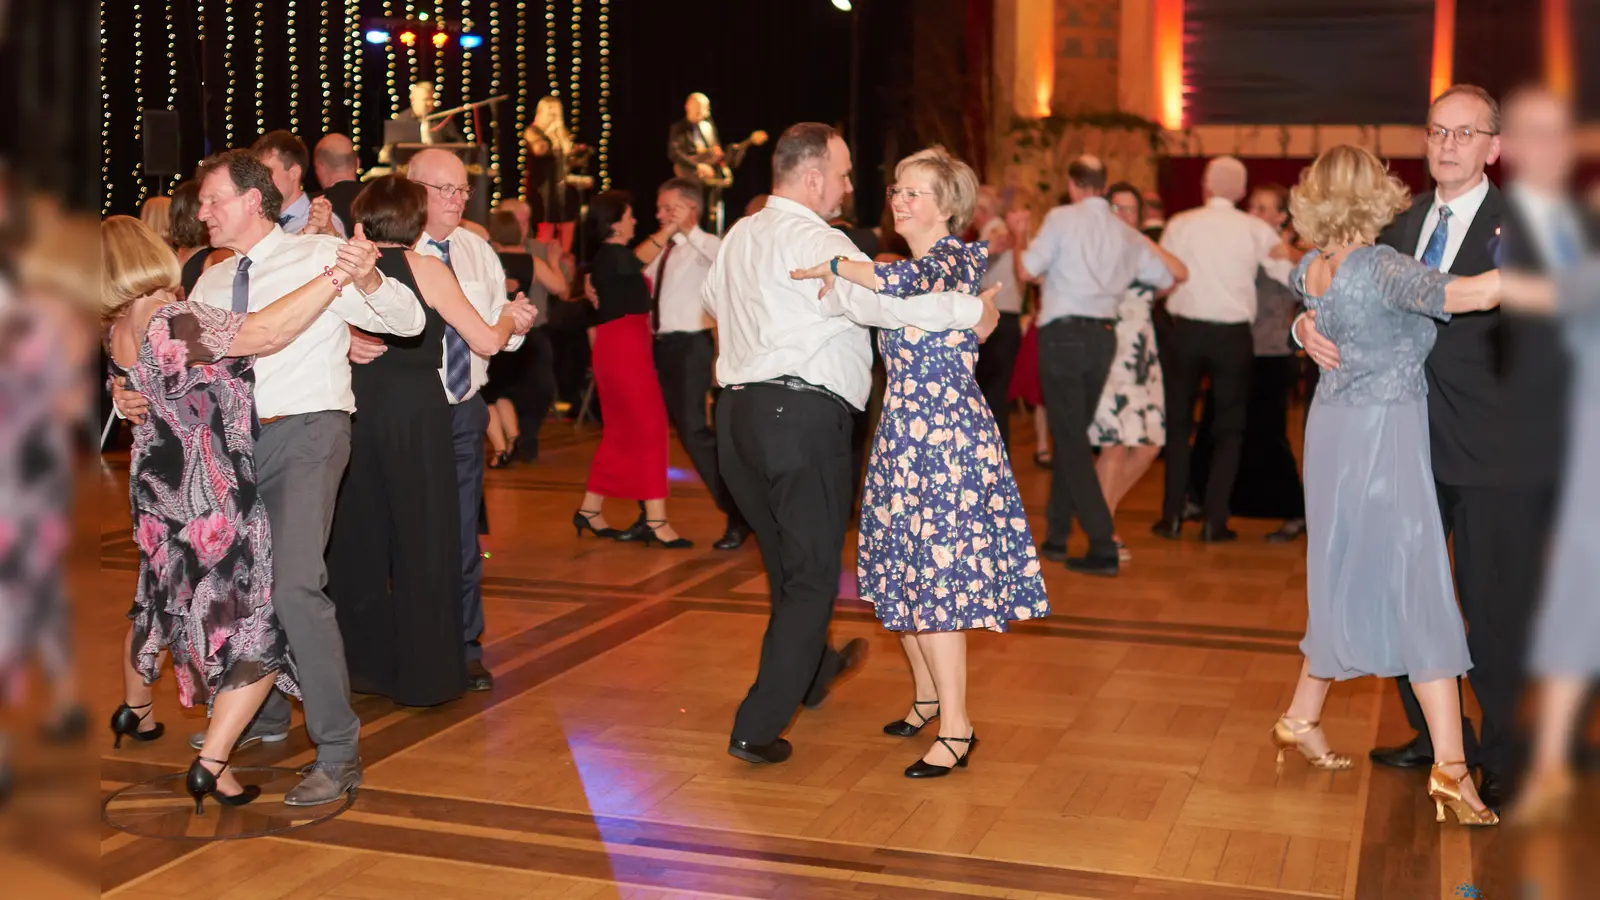 Die Besucher des Dornröschenballs nutzten ausgiebig die Gelegenheit, in festlicher Atmosphäre das Tanzbein zu schwingen. (Foto: Stefan Bönning)